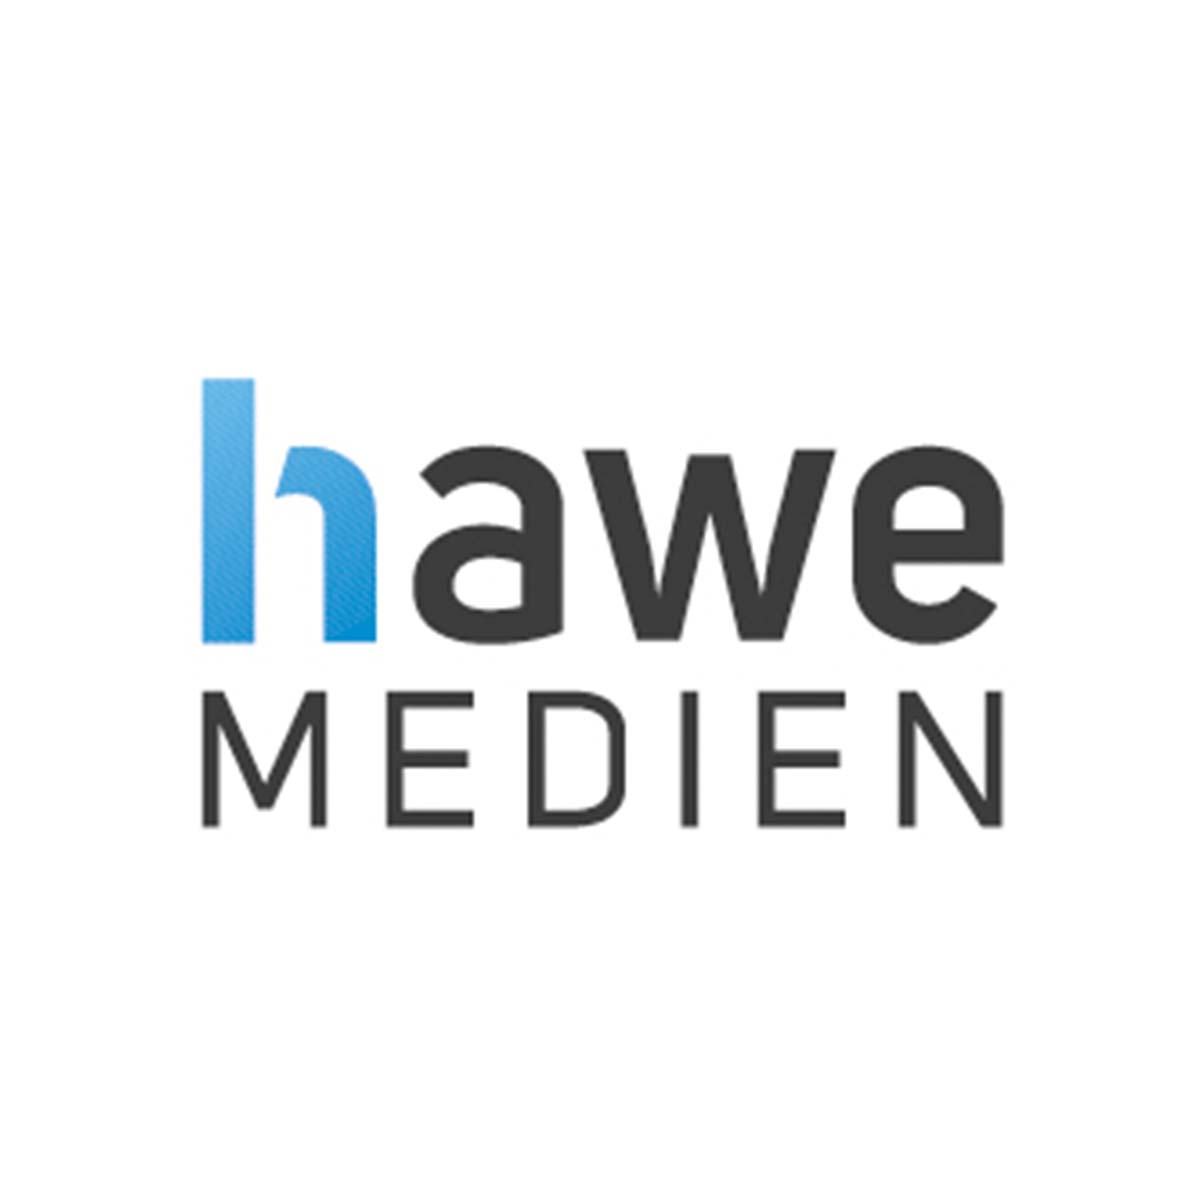 HaWe MEDIEN GmbH